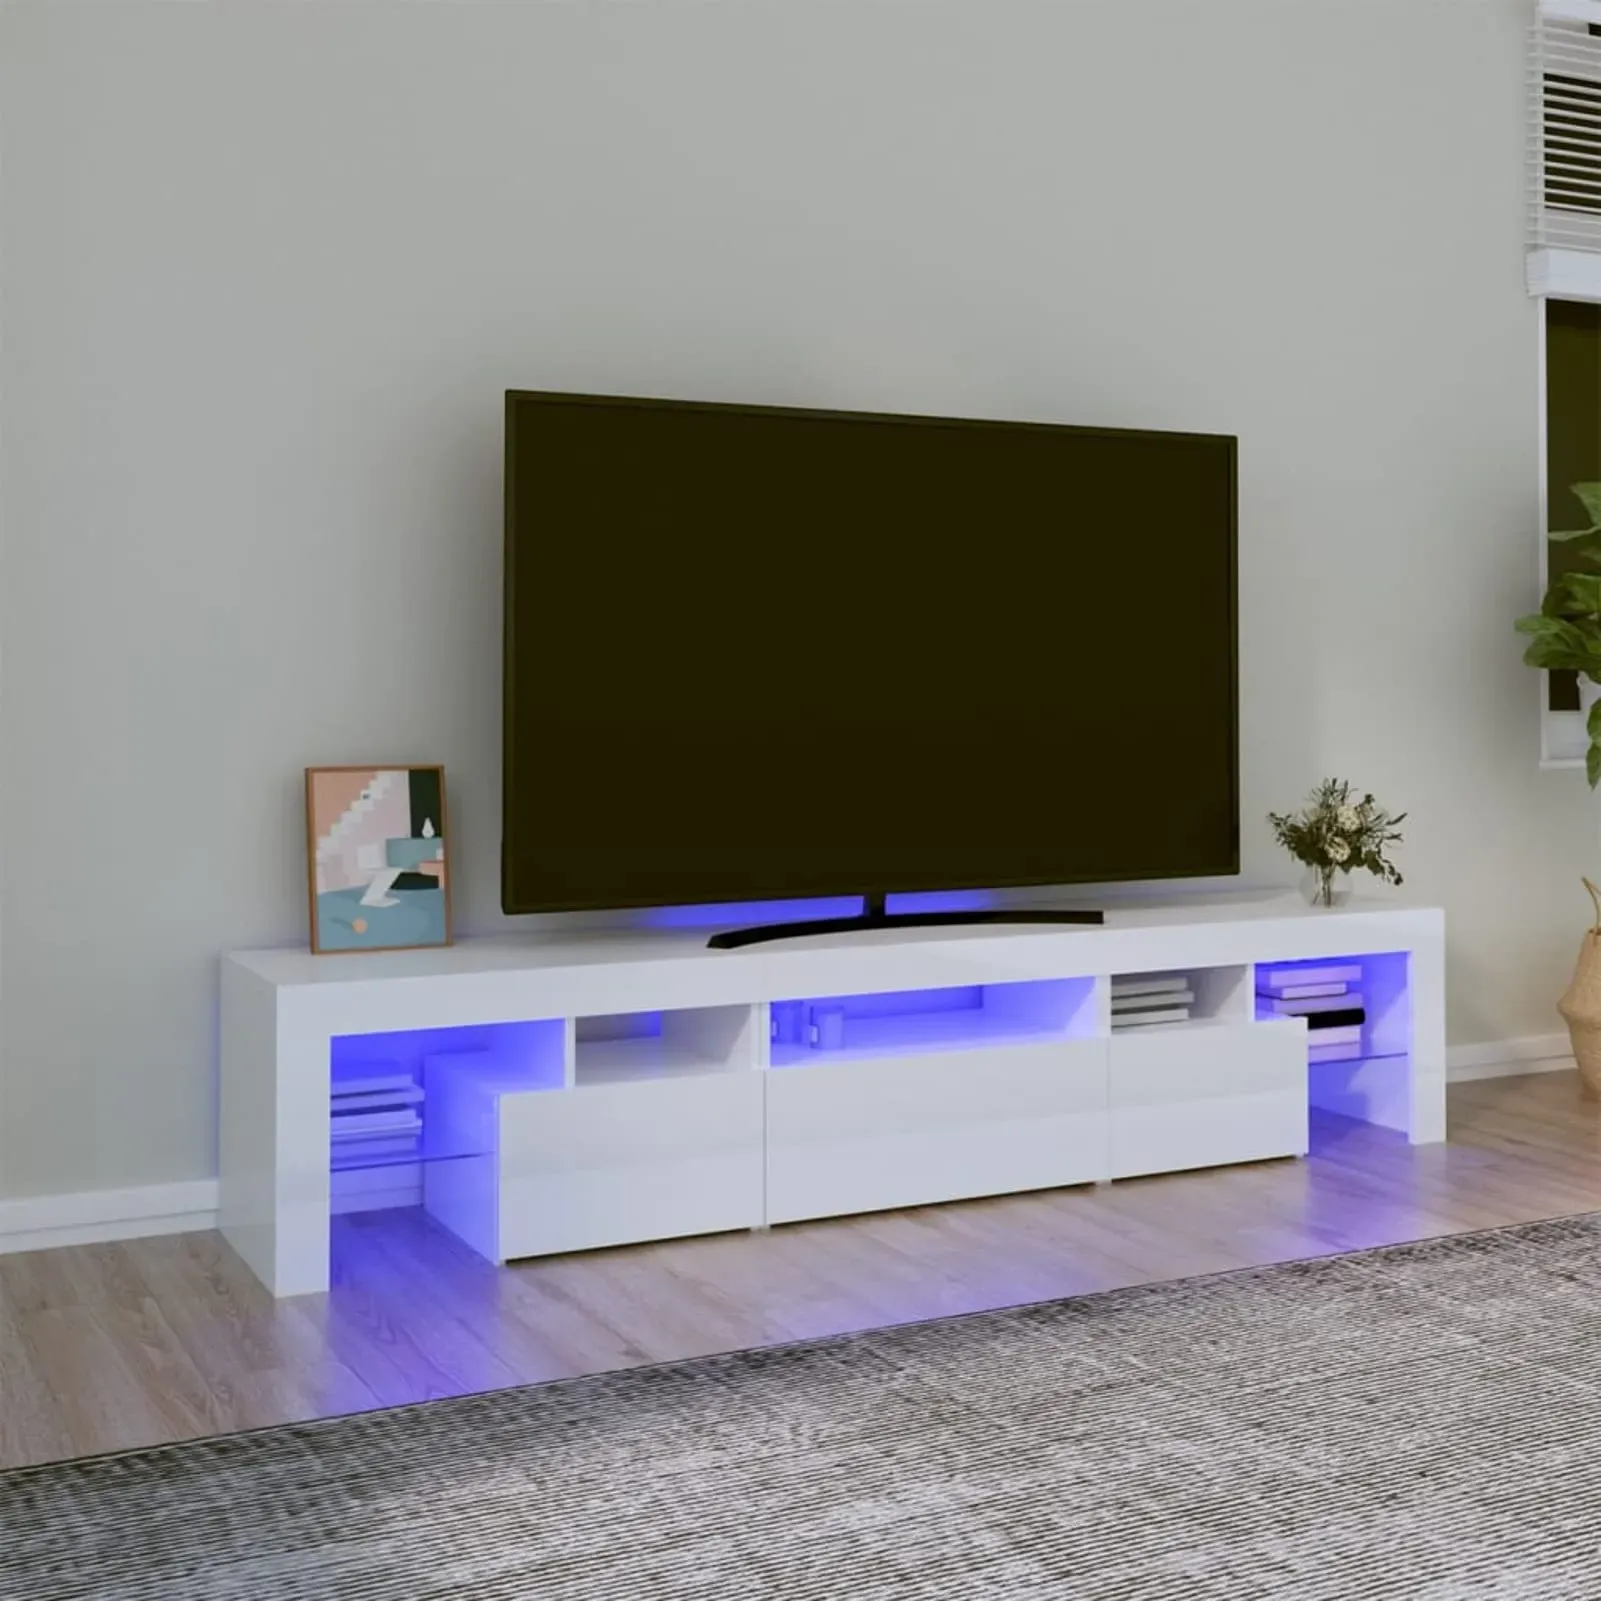 Festnight TV Lowboard mit LED TV Board Fernsehschrank TV Schrank Lowboard Fernsehschrank Fernsehtisch Sideboard für Wohnzimmer Schlafzimmer Möbel 200 x 36.5 x 40 cm Hochglanz-Weiß